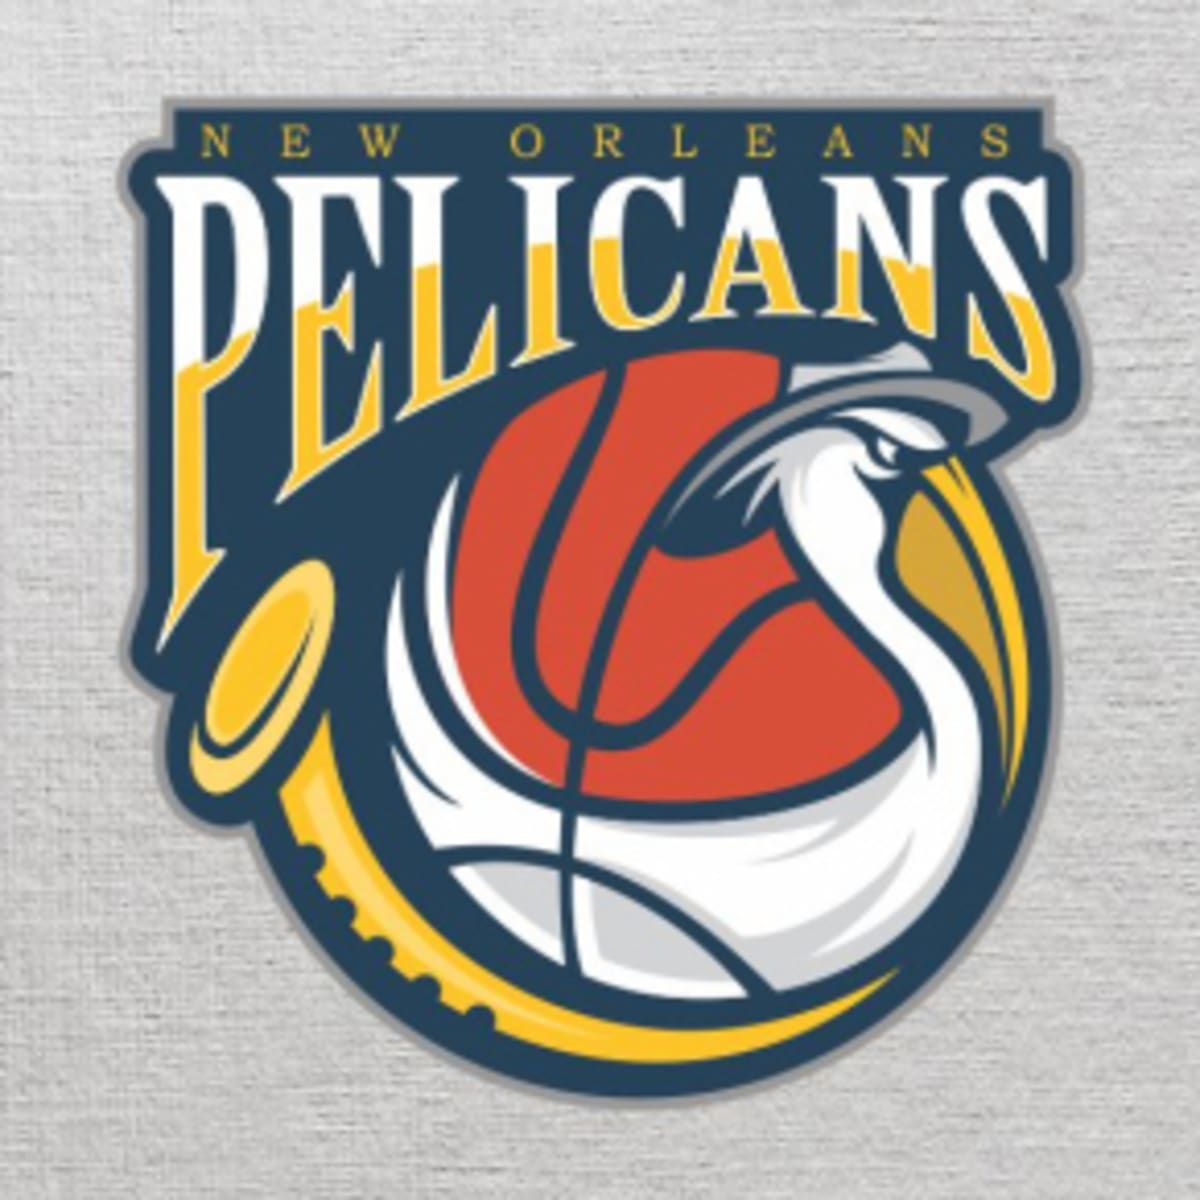 New Orleans Pelicans  New orleans pelicans, New orleans, Pelican